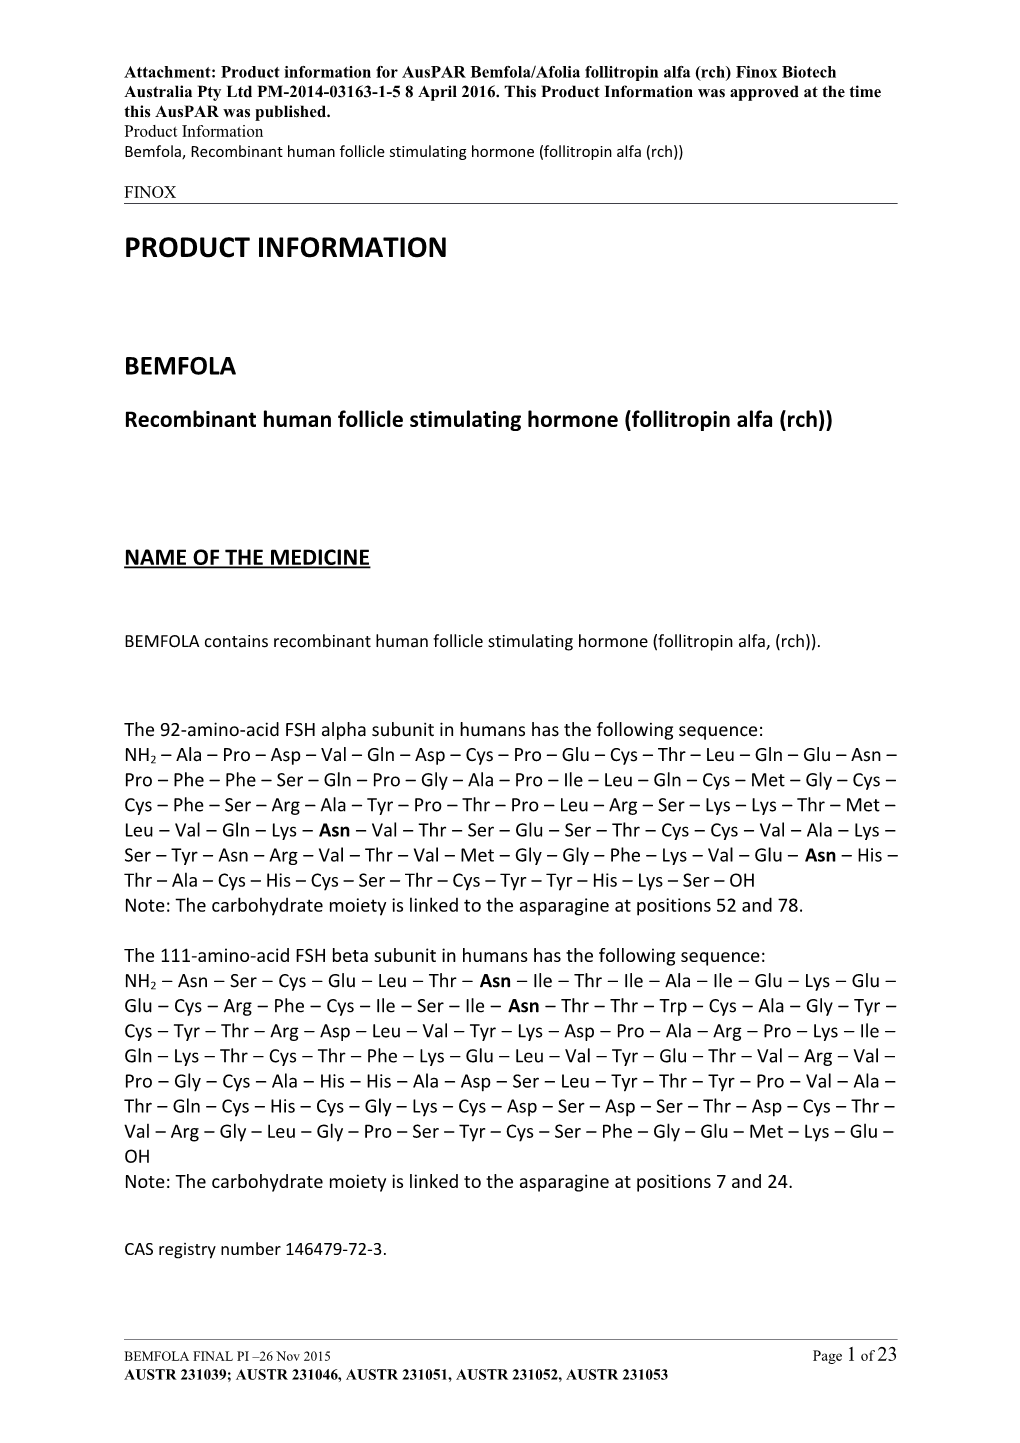 Auspar Attachment: Product Information for Bemfolia